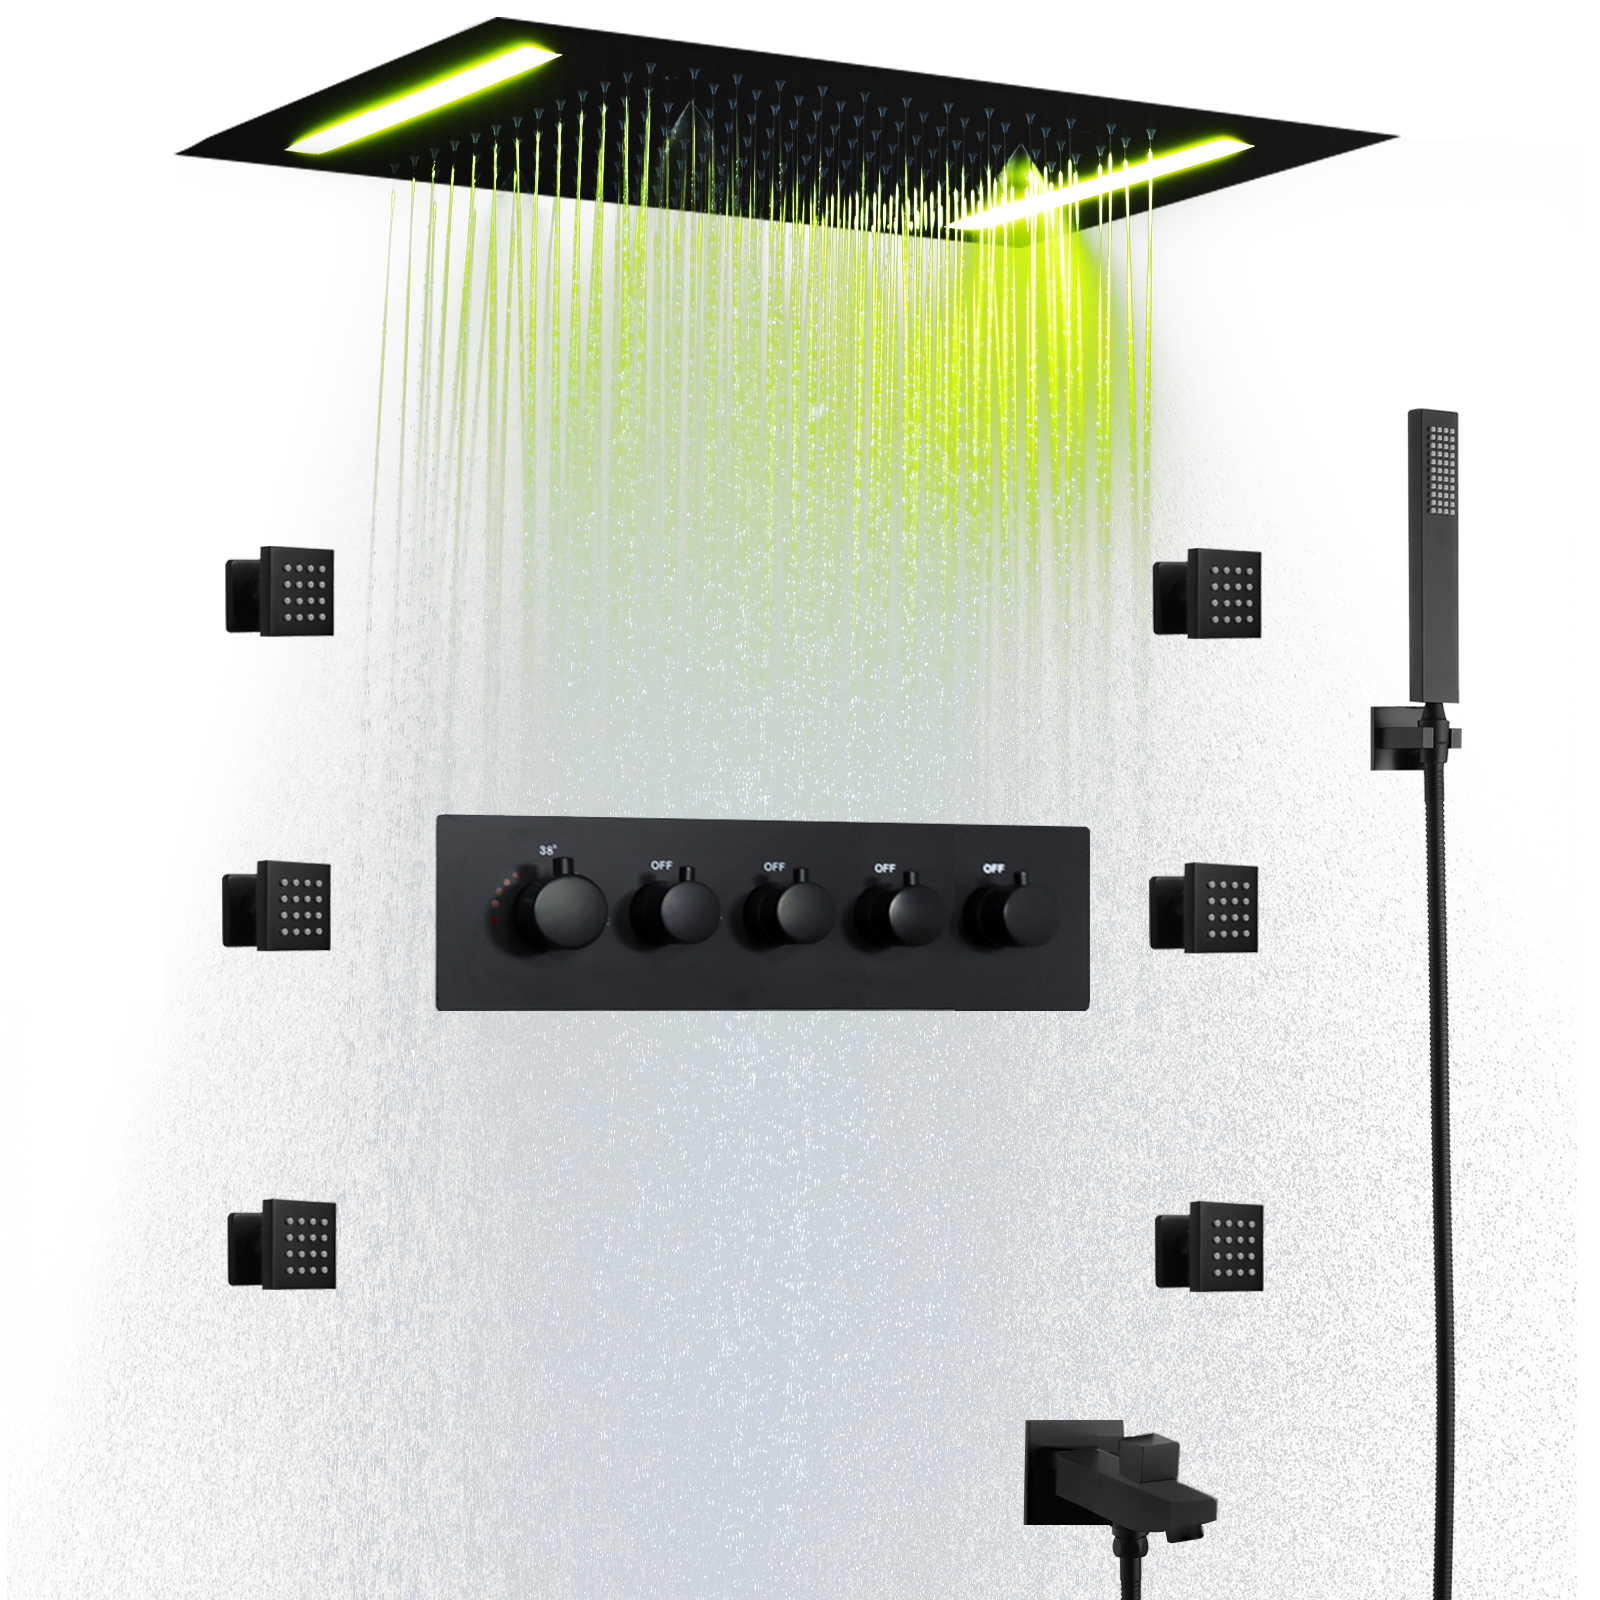 نظام دش بدرجة حرارة ثابتة باللون الأسود غير اللامع مقاس 50 × 36 سم يناسب نظام الدش متعدد الوظائف LED للحمام